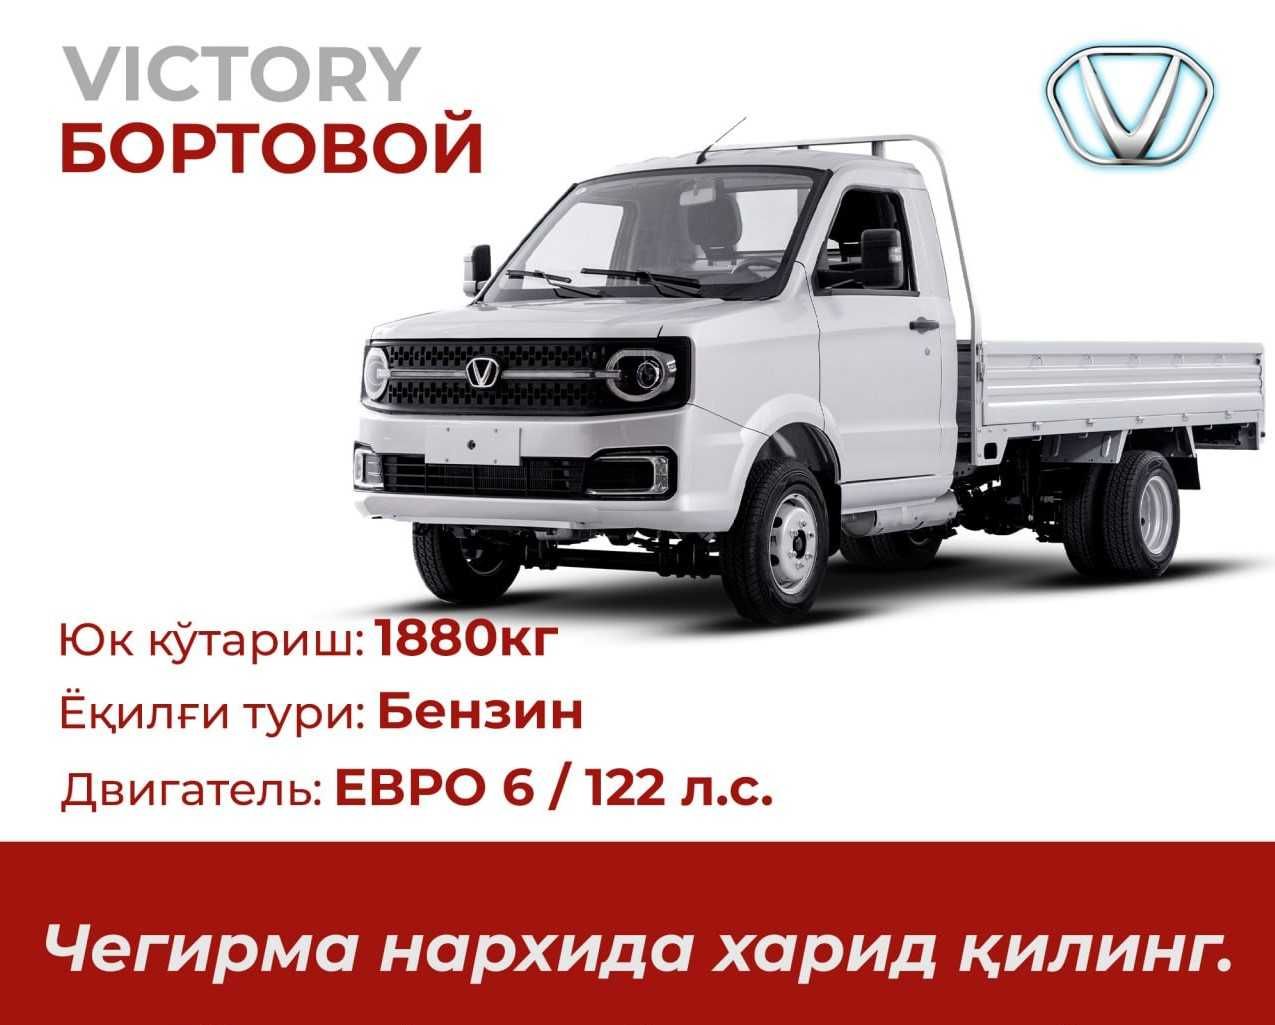 VICTORY мини грузовик 3,5 тонн